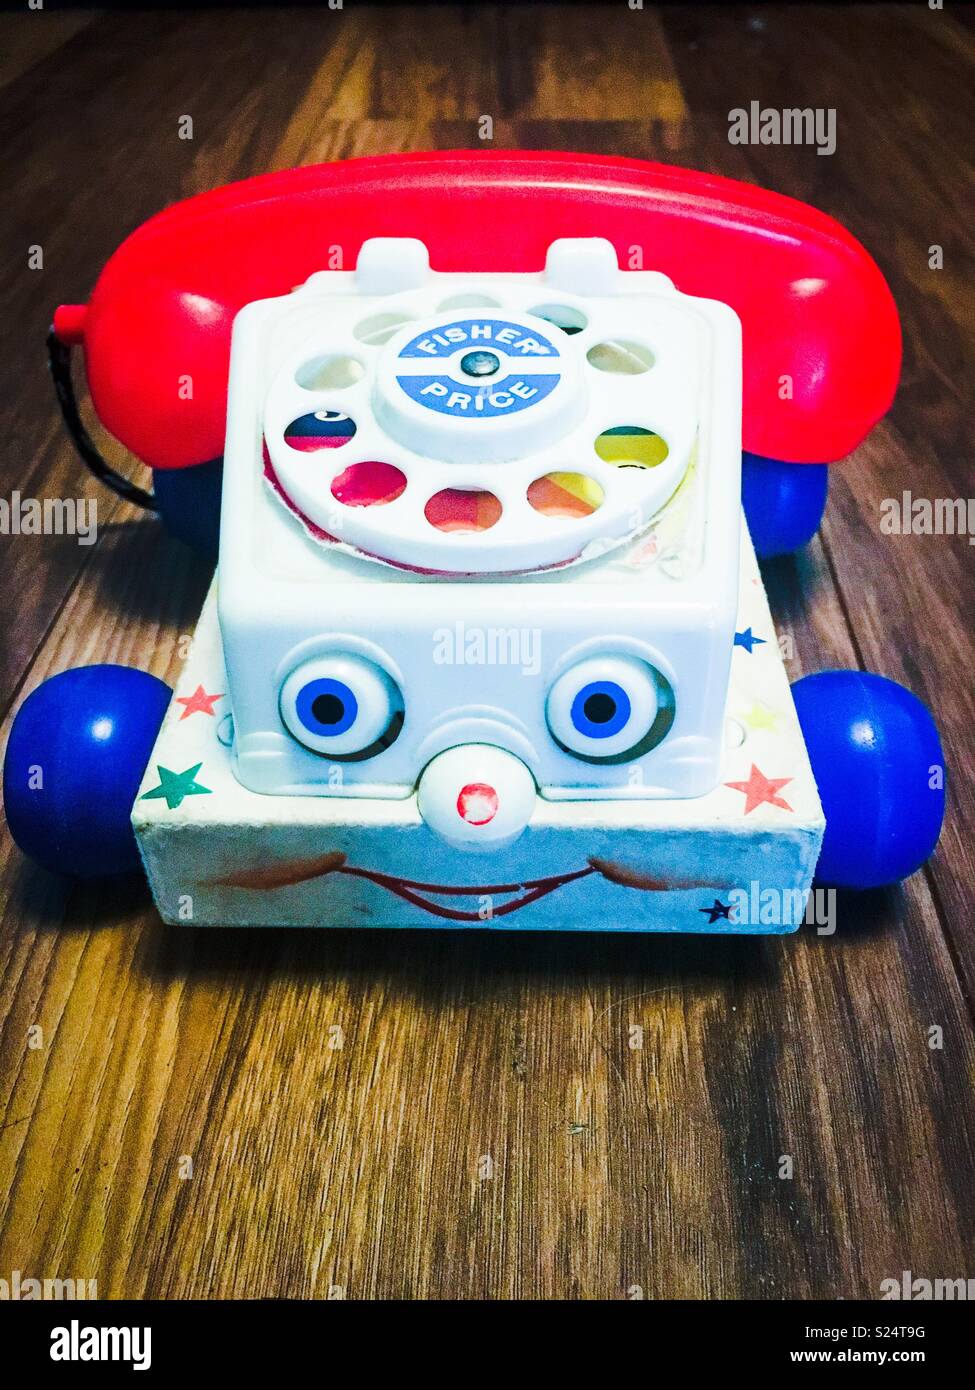 Teléfono de juguete para niños Fotografía de stock -